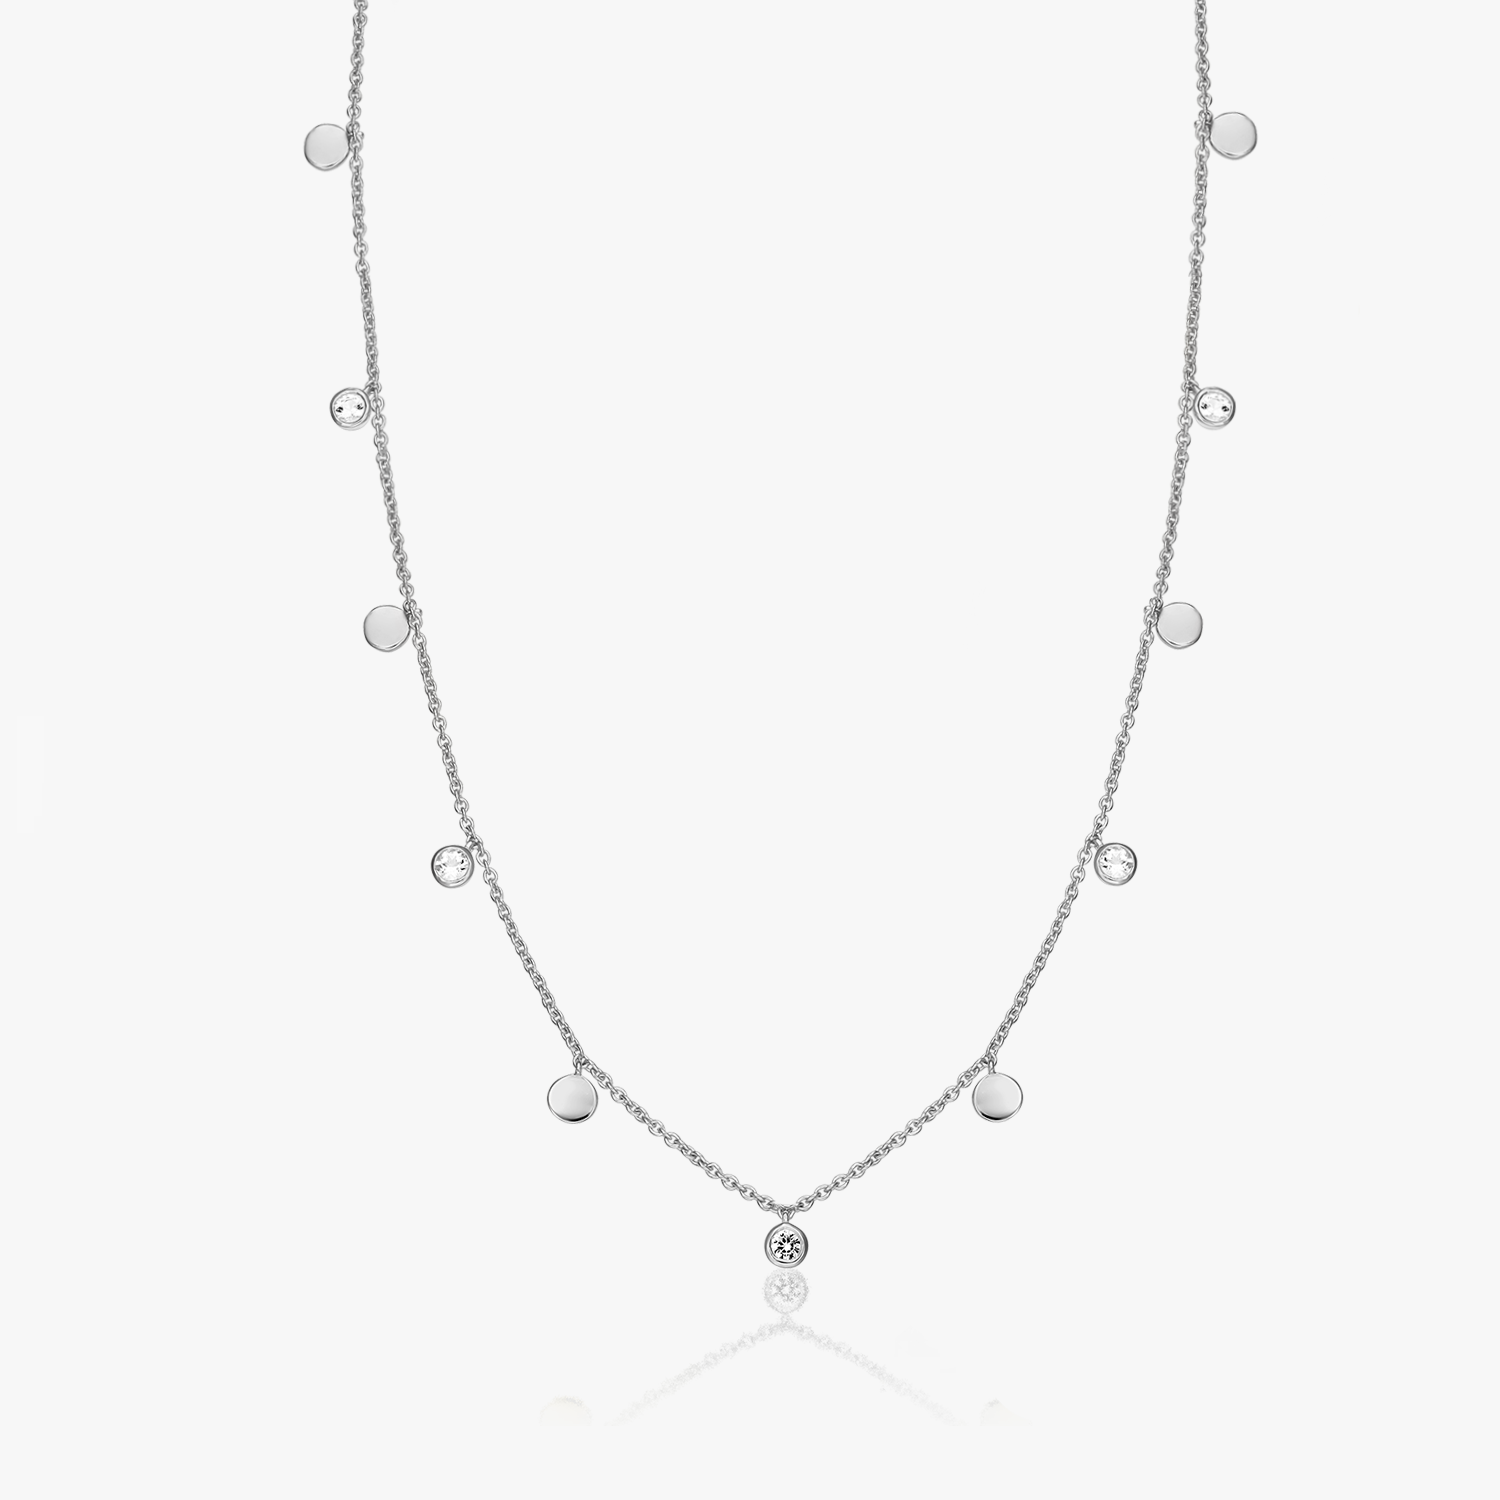 Noora silver necklace - White Topaz